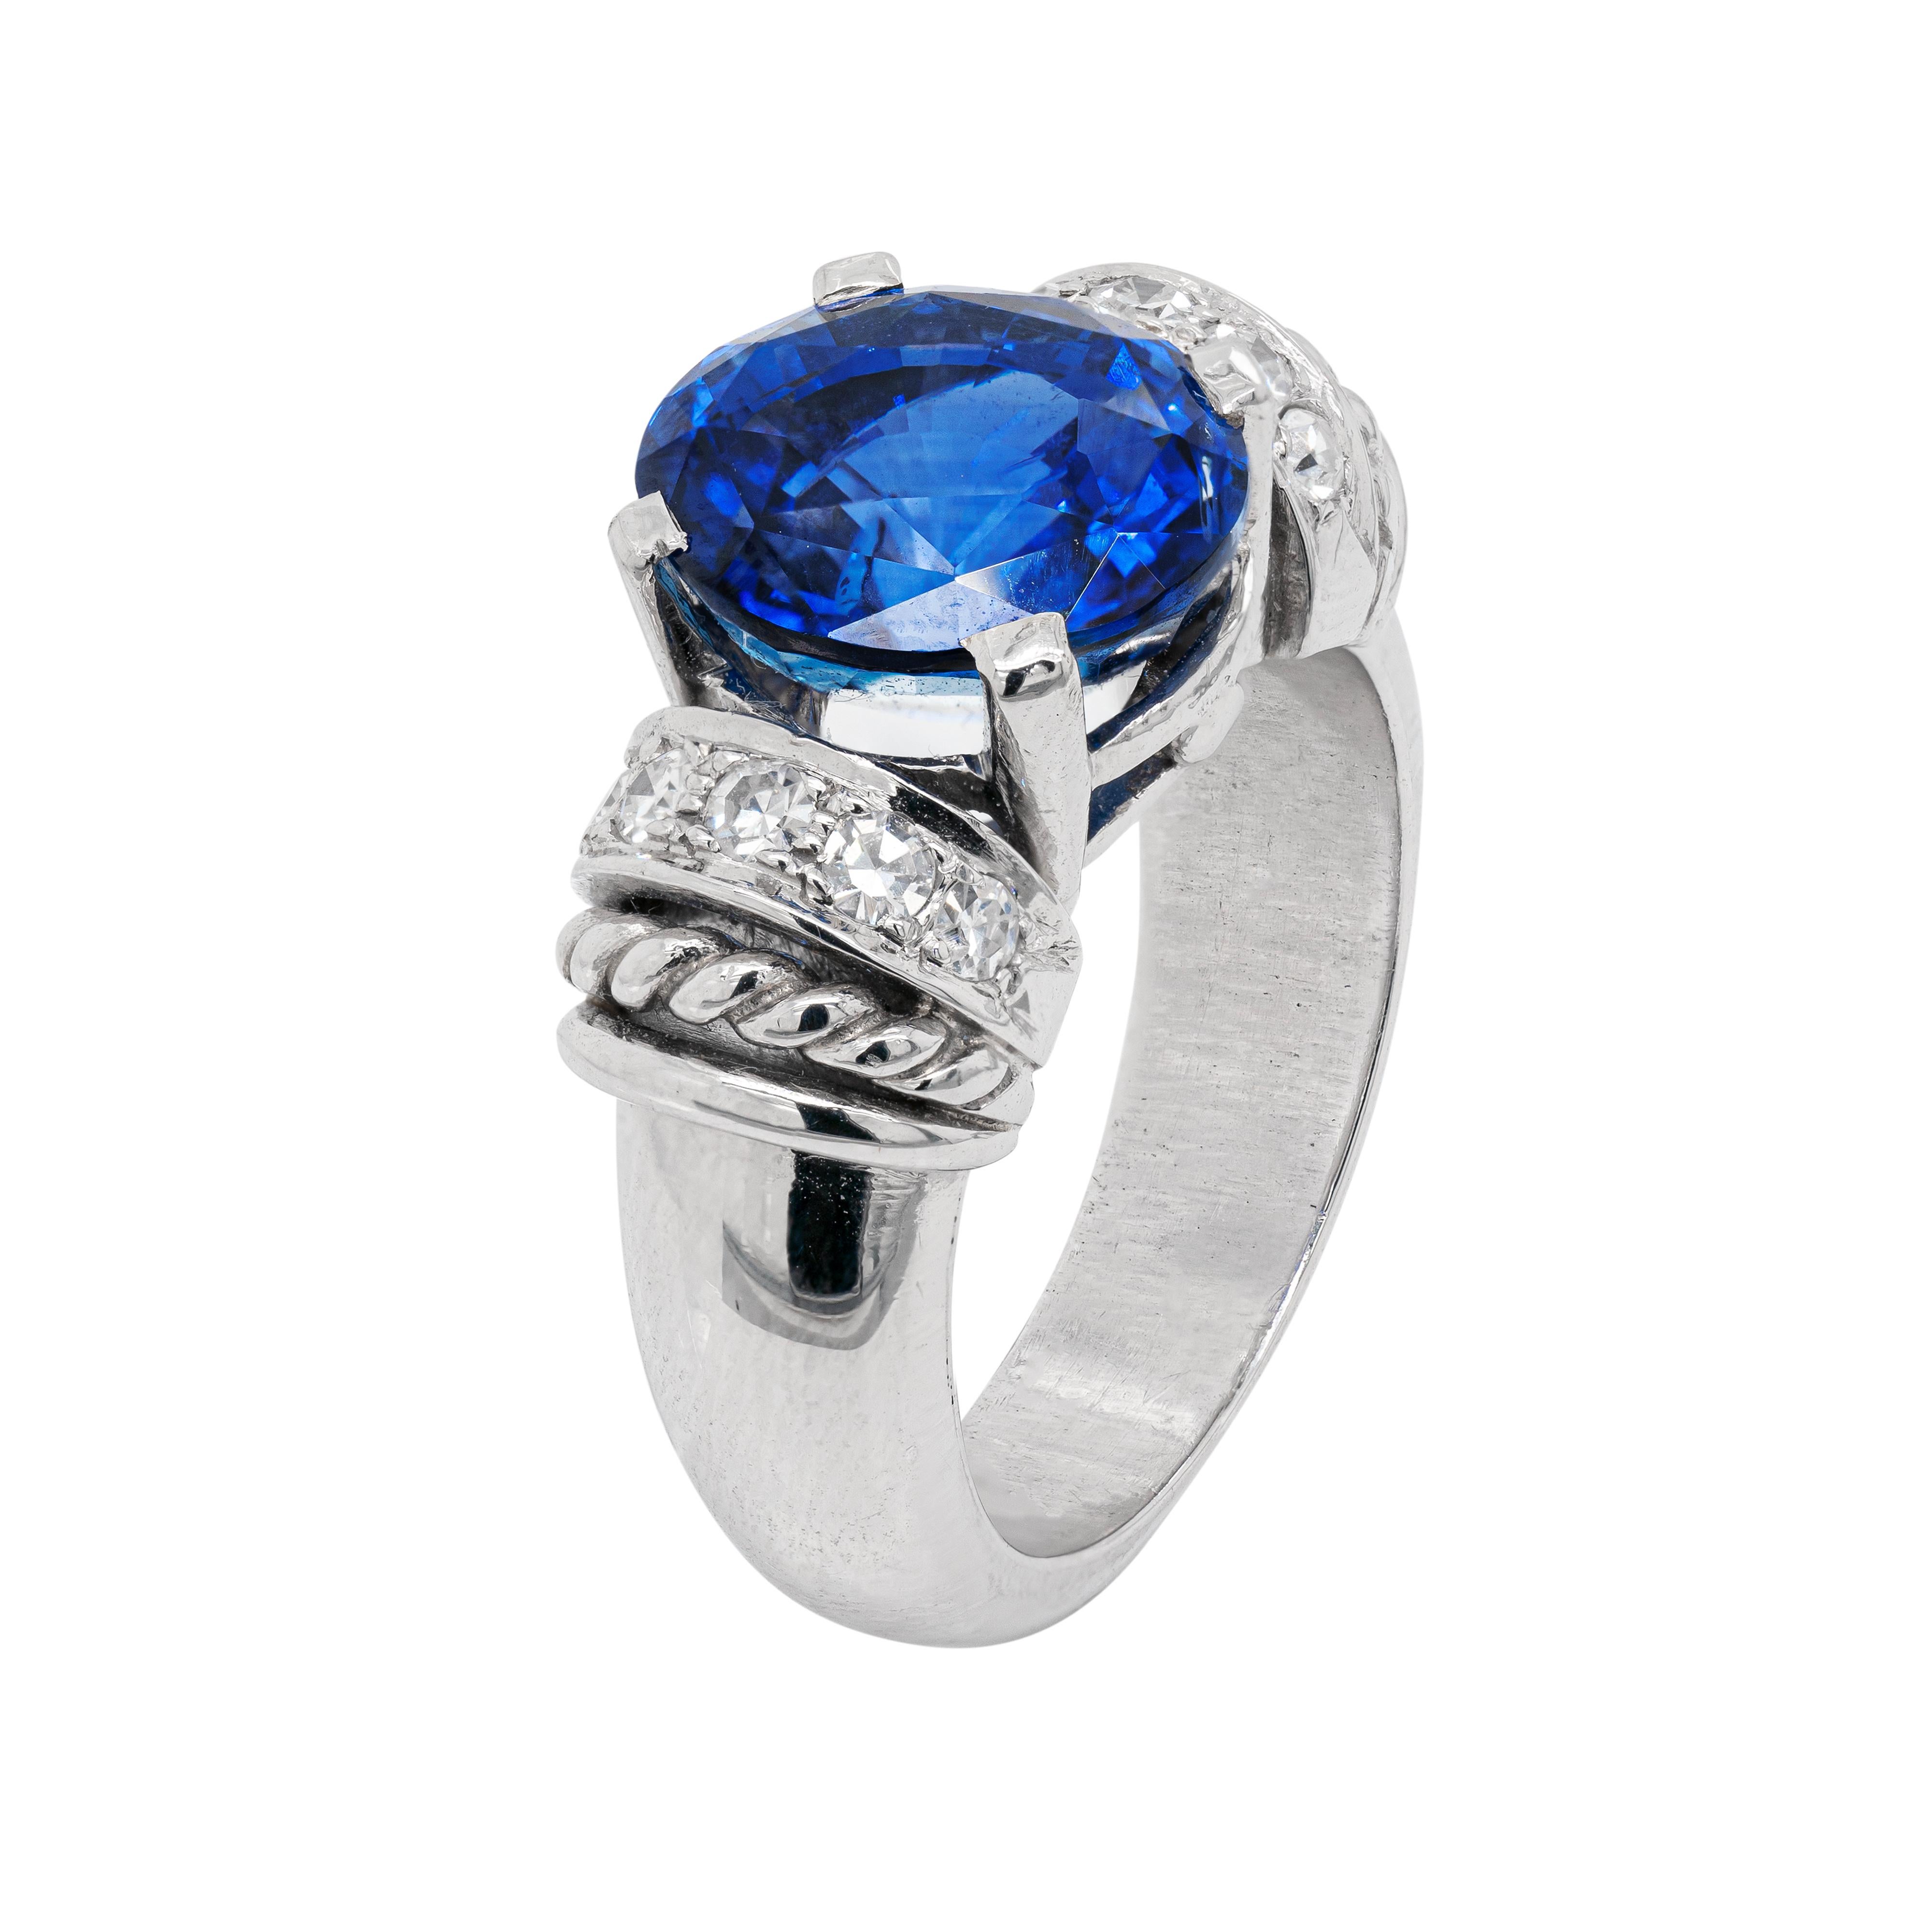 Cette merveilleuse bague en platine présente un saphir ovale bleu royal impressionnant pesant 6.60ct, monté dans une monture à quatre griffes, à dos ouvert. La pierre précieuse vibrante est magnifiquement accompagnée de cinq diamants ronds de taille